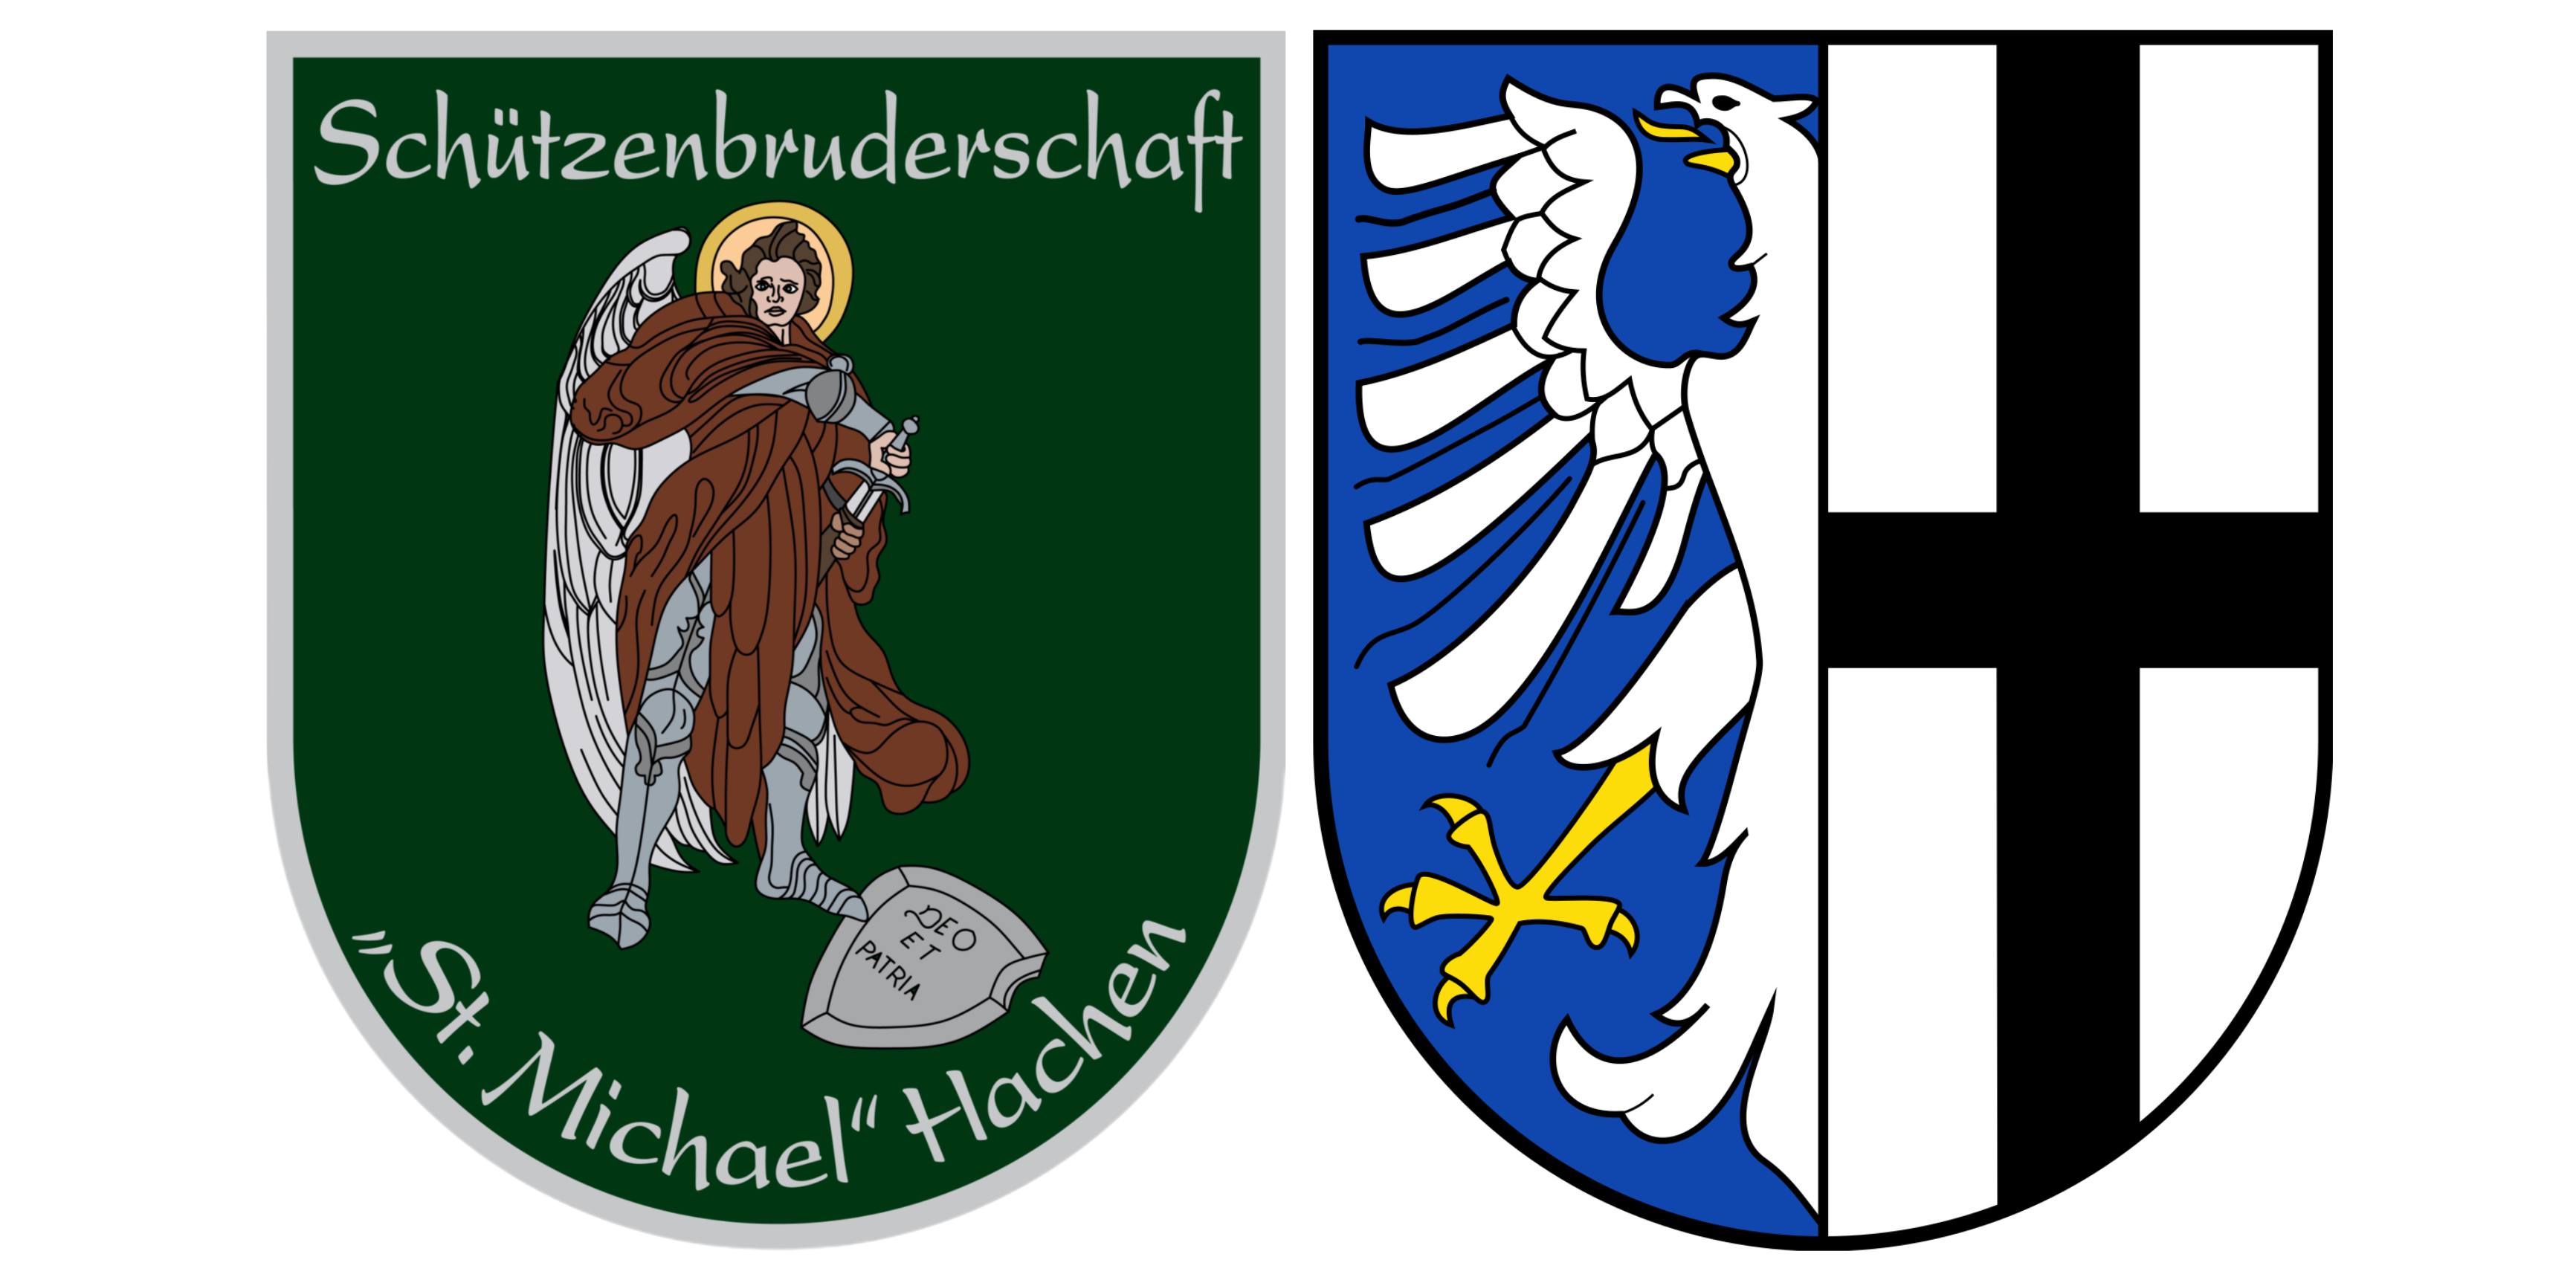 Schützenbruderschaft "St. Michael" Hachen e.V.